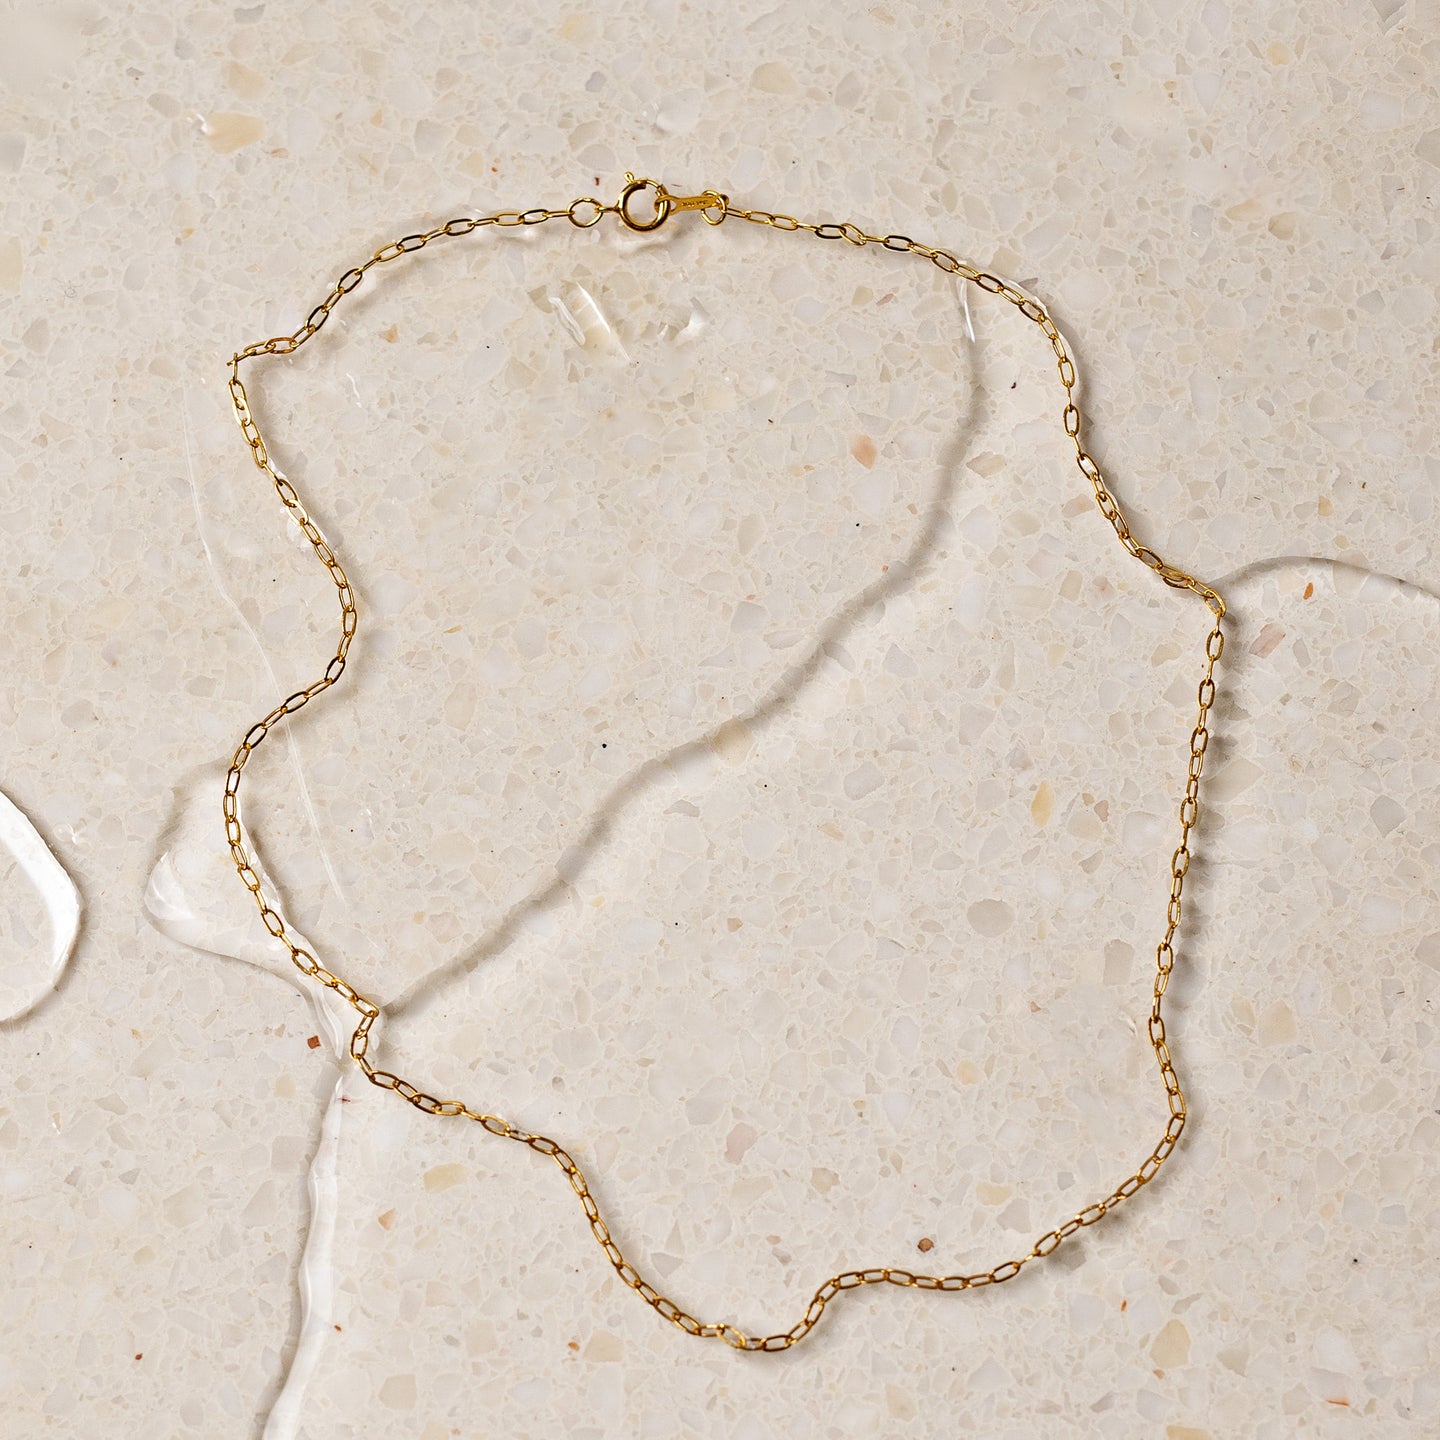 Charlotte link necklace - 14K Gold filled